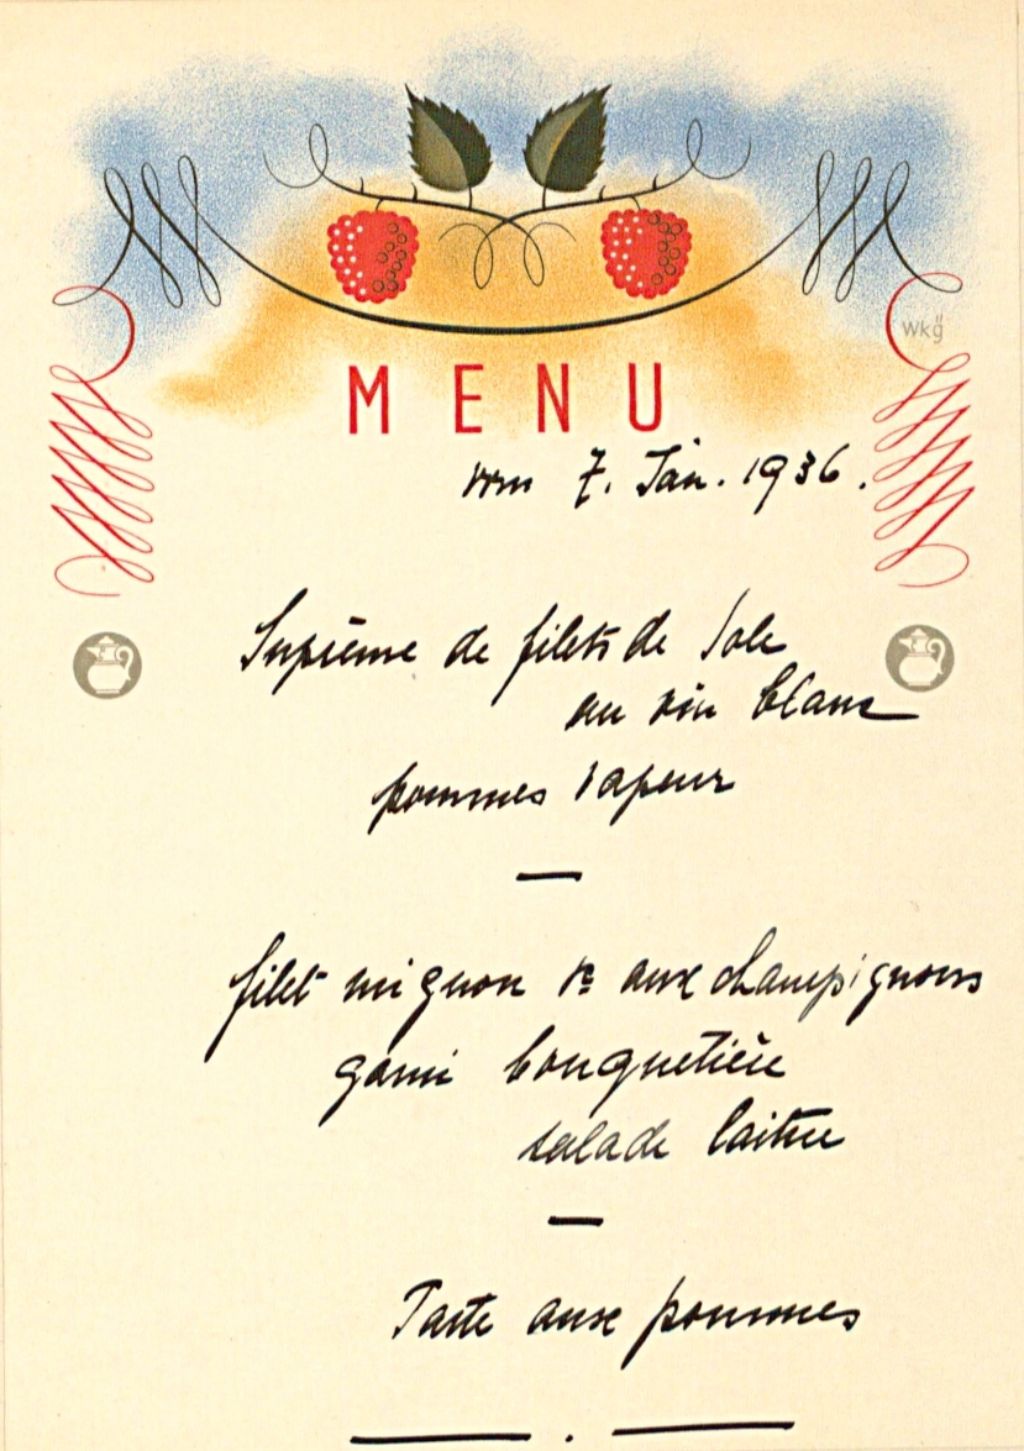 Beige Menükarte, von Hand geschrieben mit schwarzer Tinte, im Kopf zwei Himbeeren an einem Zweig. Das Menü beinhaltete: filet de sole au vin blanc avec pommes sapeurs, filet mignon mit Salatbouquet, tarte aux pommes.